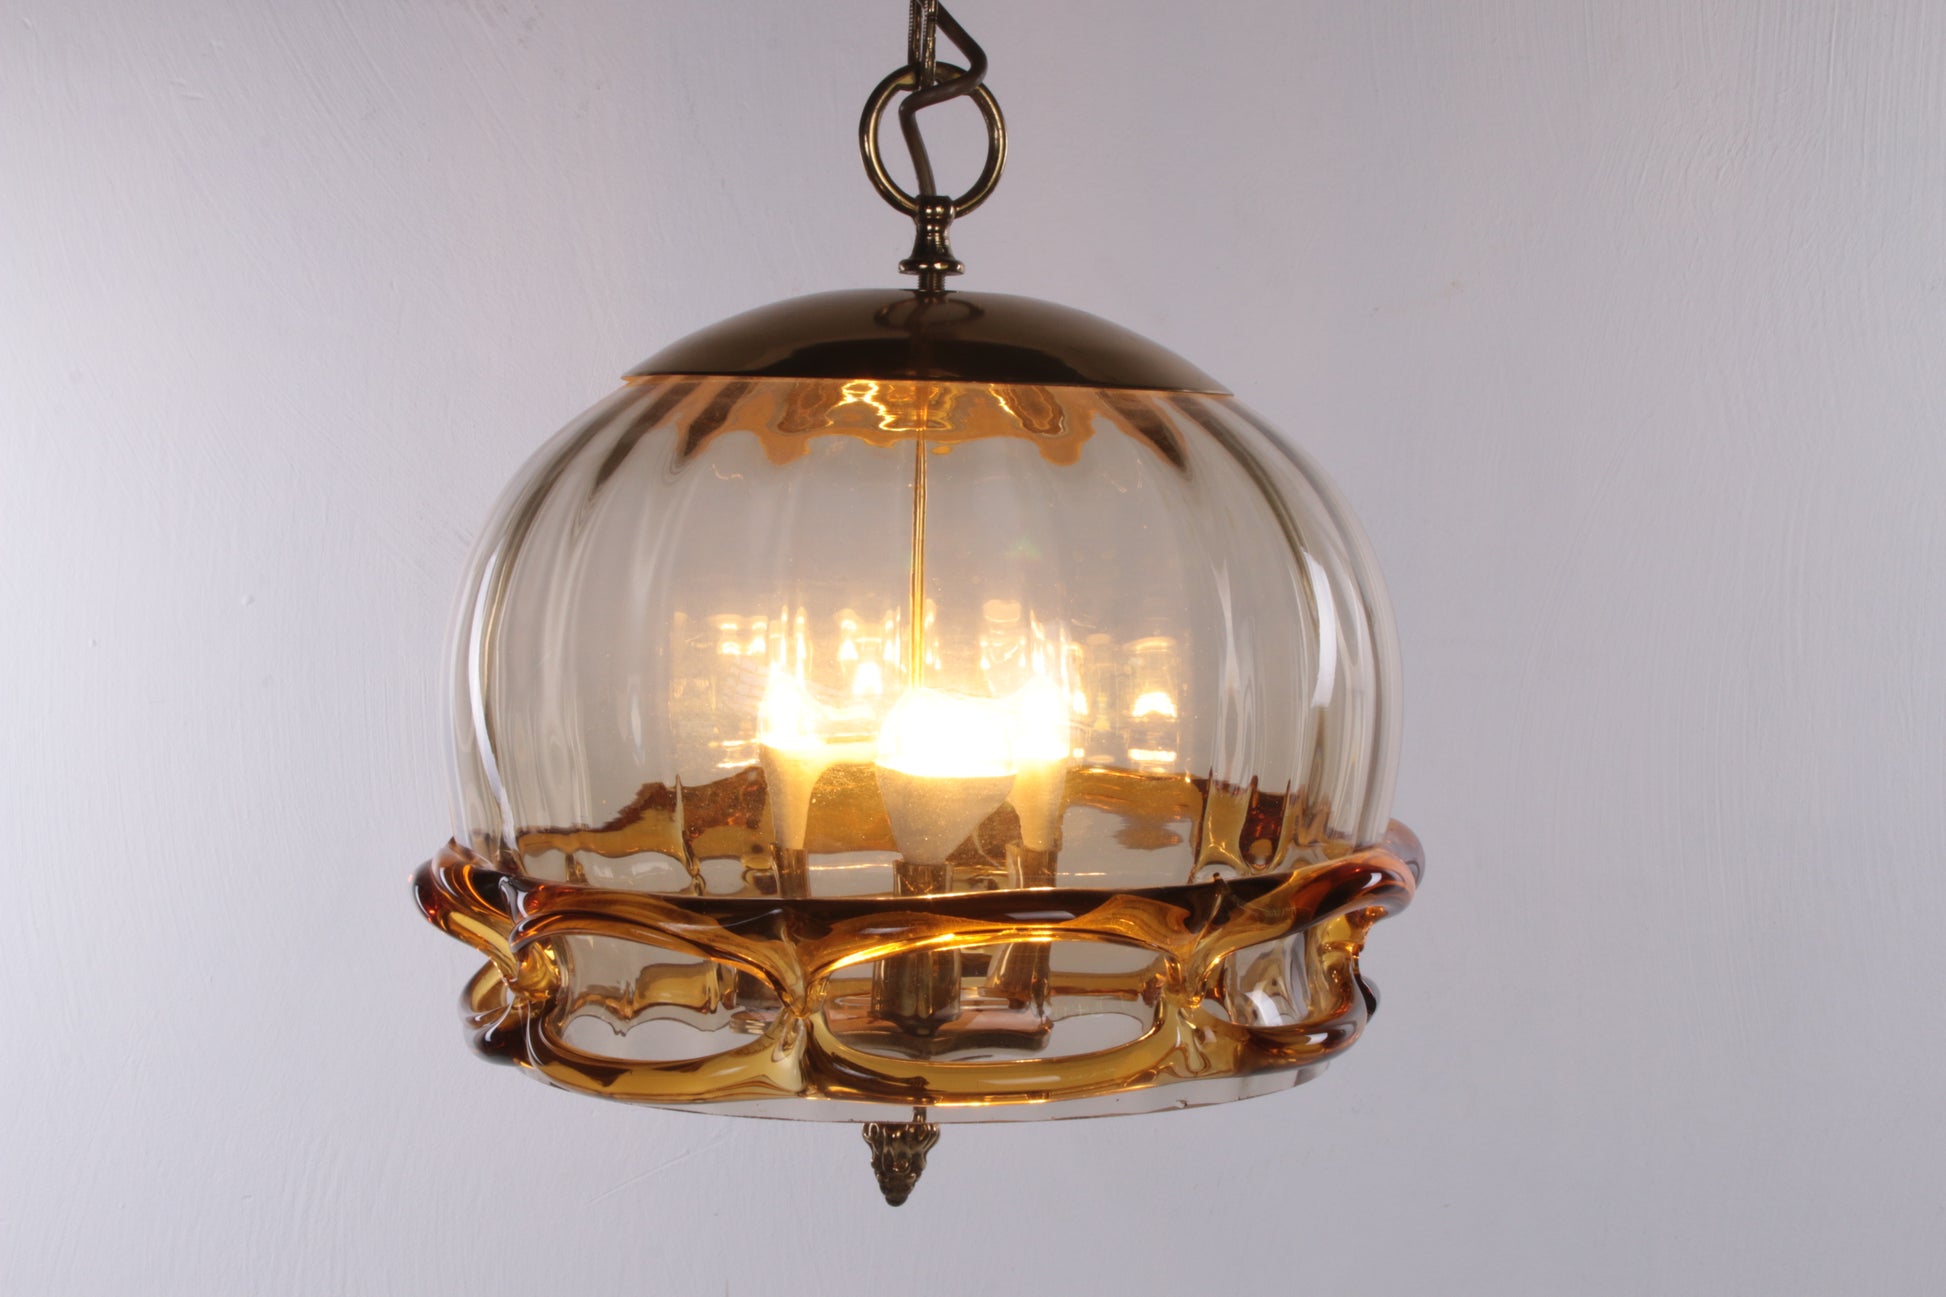 Hollywood Regency Hanglamp met Murano glas,Fischer Leuchten 70s voorkant licht aan